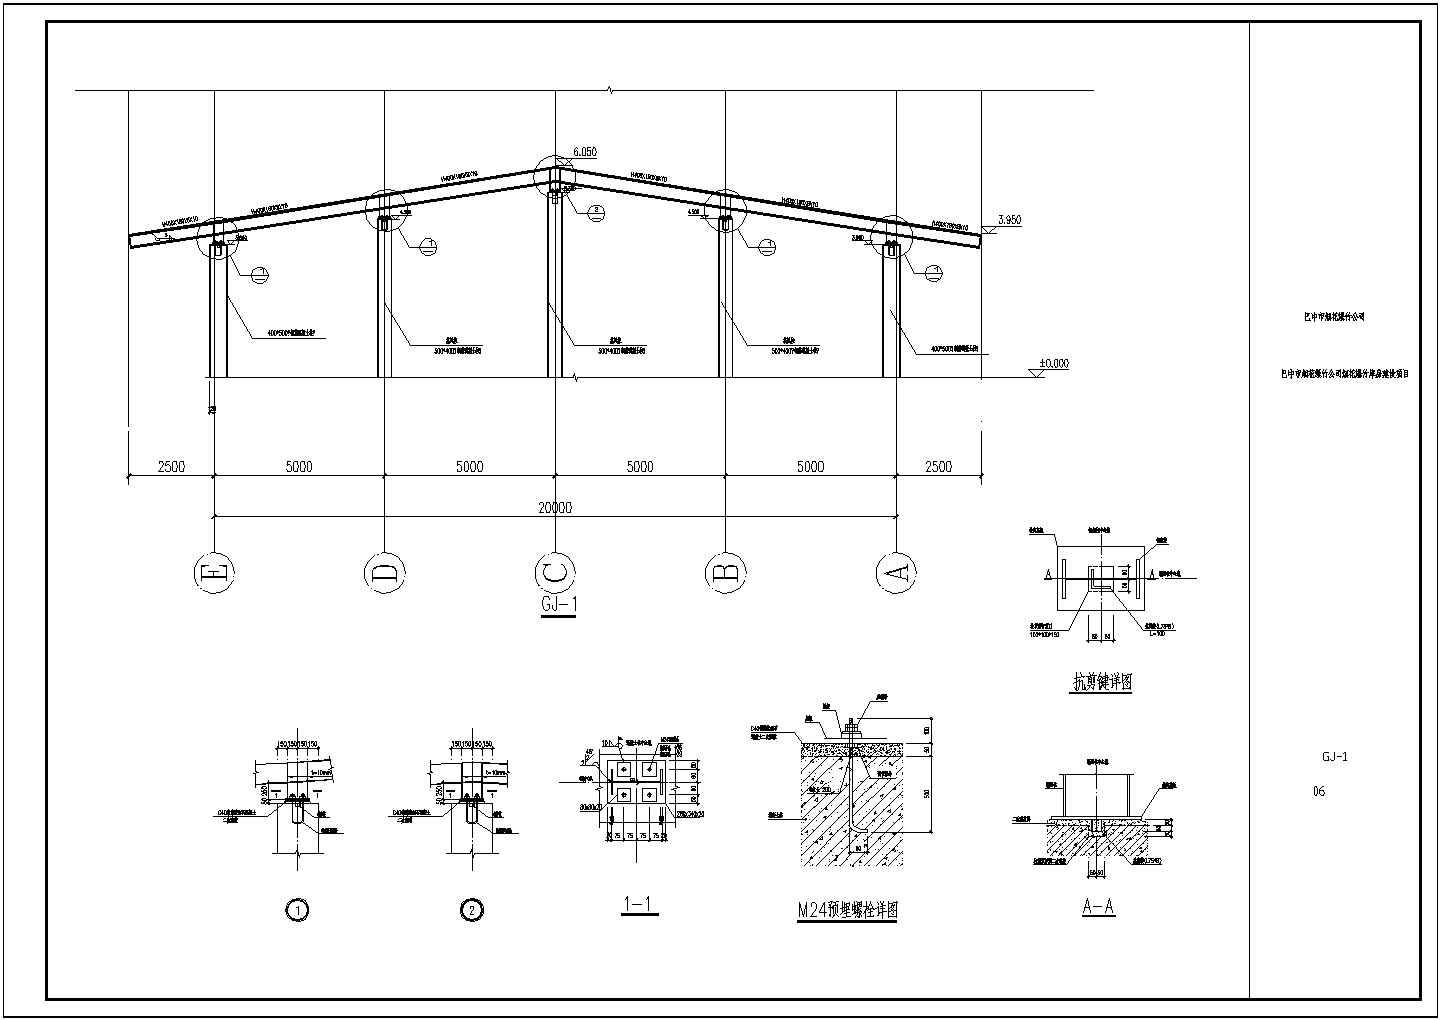 钢梁排架结构及模型混凝土柱cad图纸